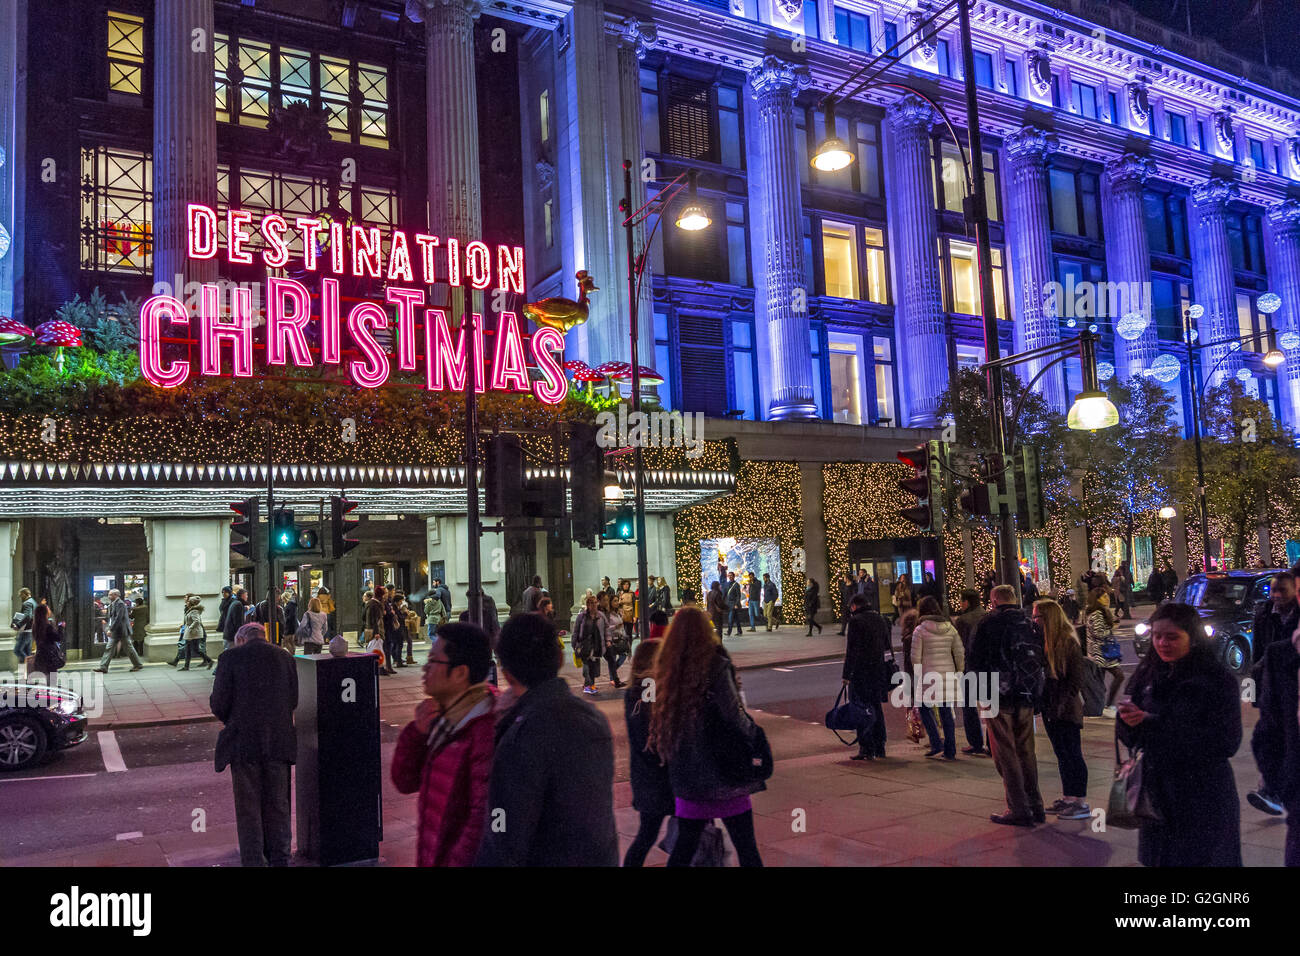 Cartello al neon 'Demination Christmas' sopra l'entrata principale del grande magazzino Selfridges su Oxford St di Londra, occupato da amanti dello shopping natalizio, Londra Foto Stock